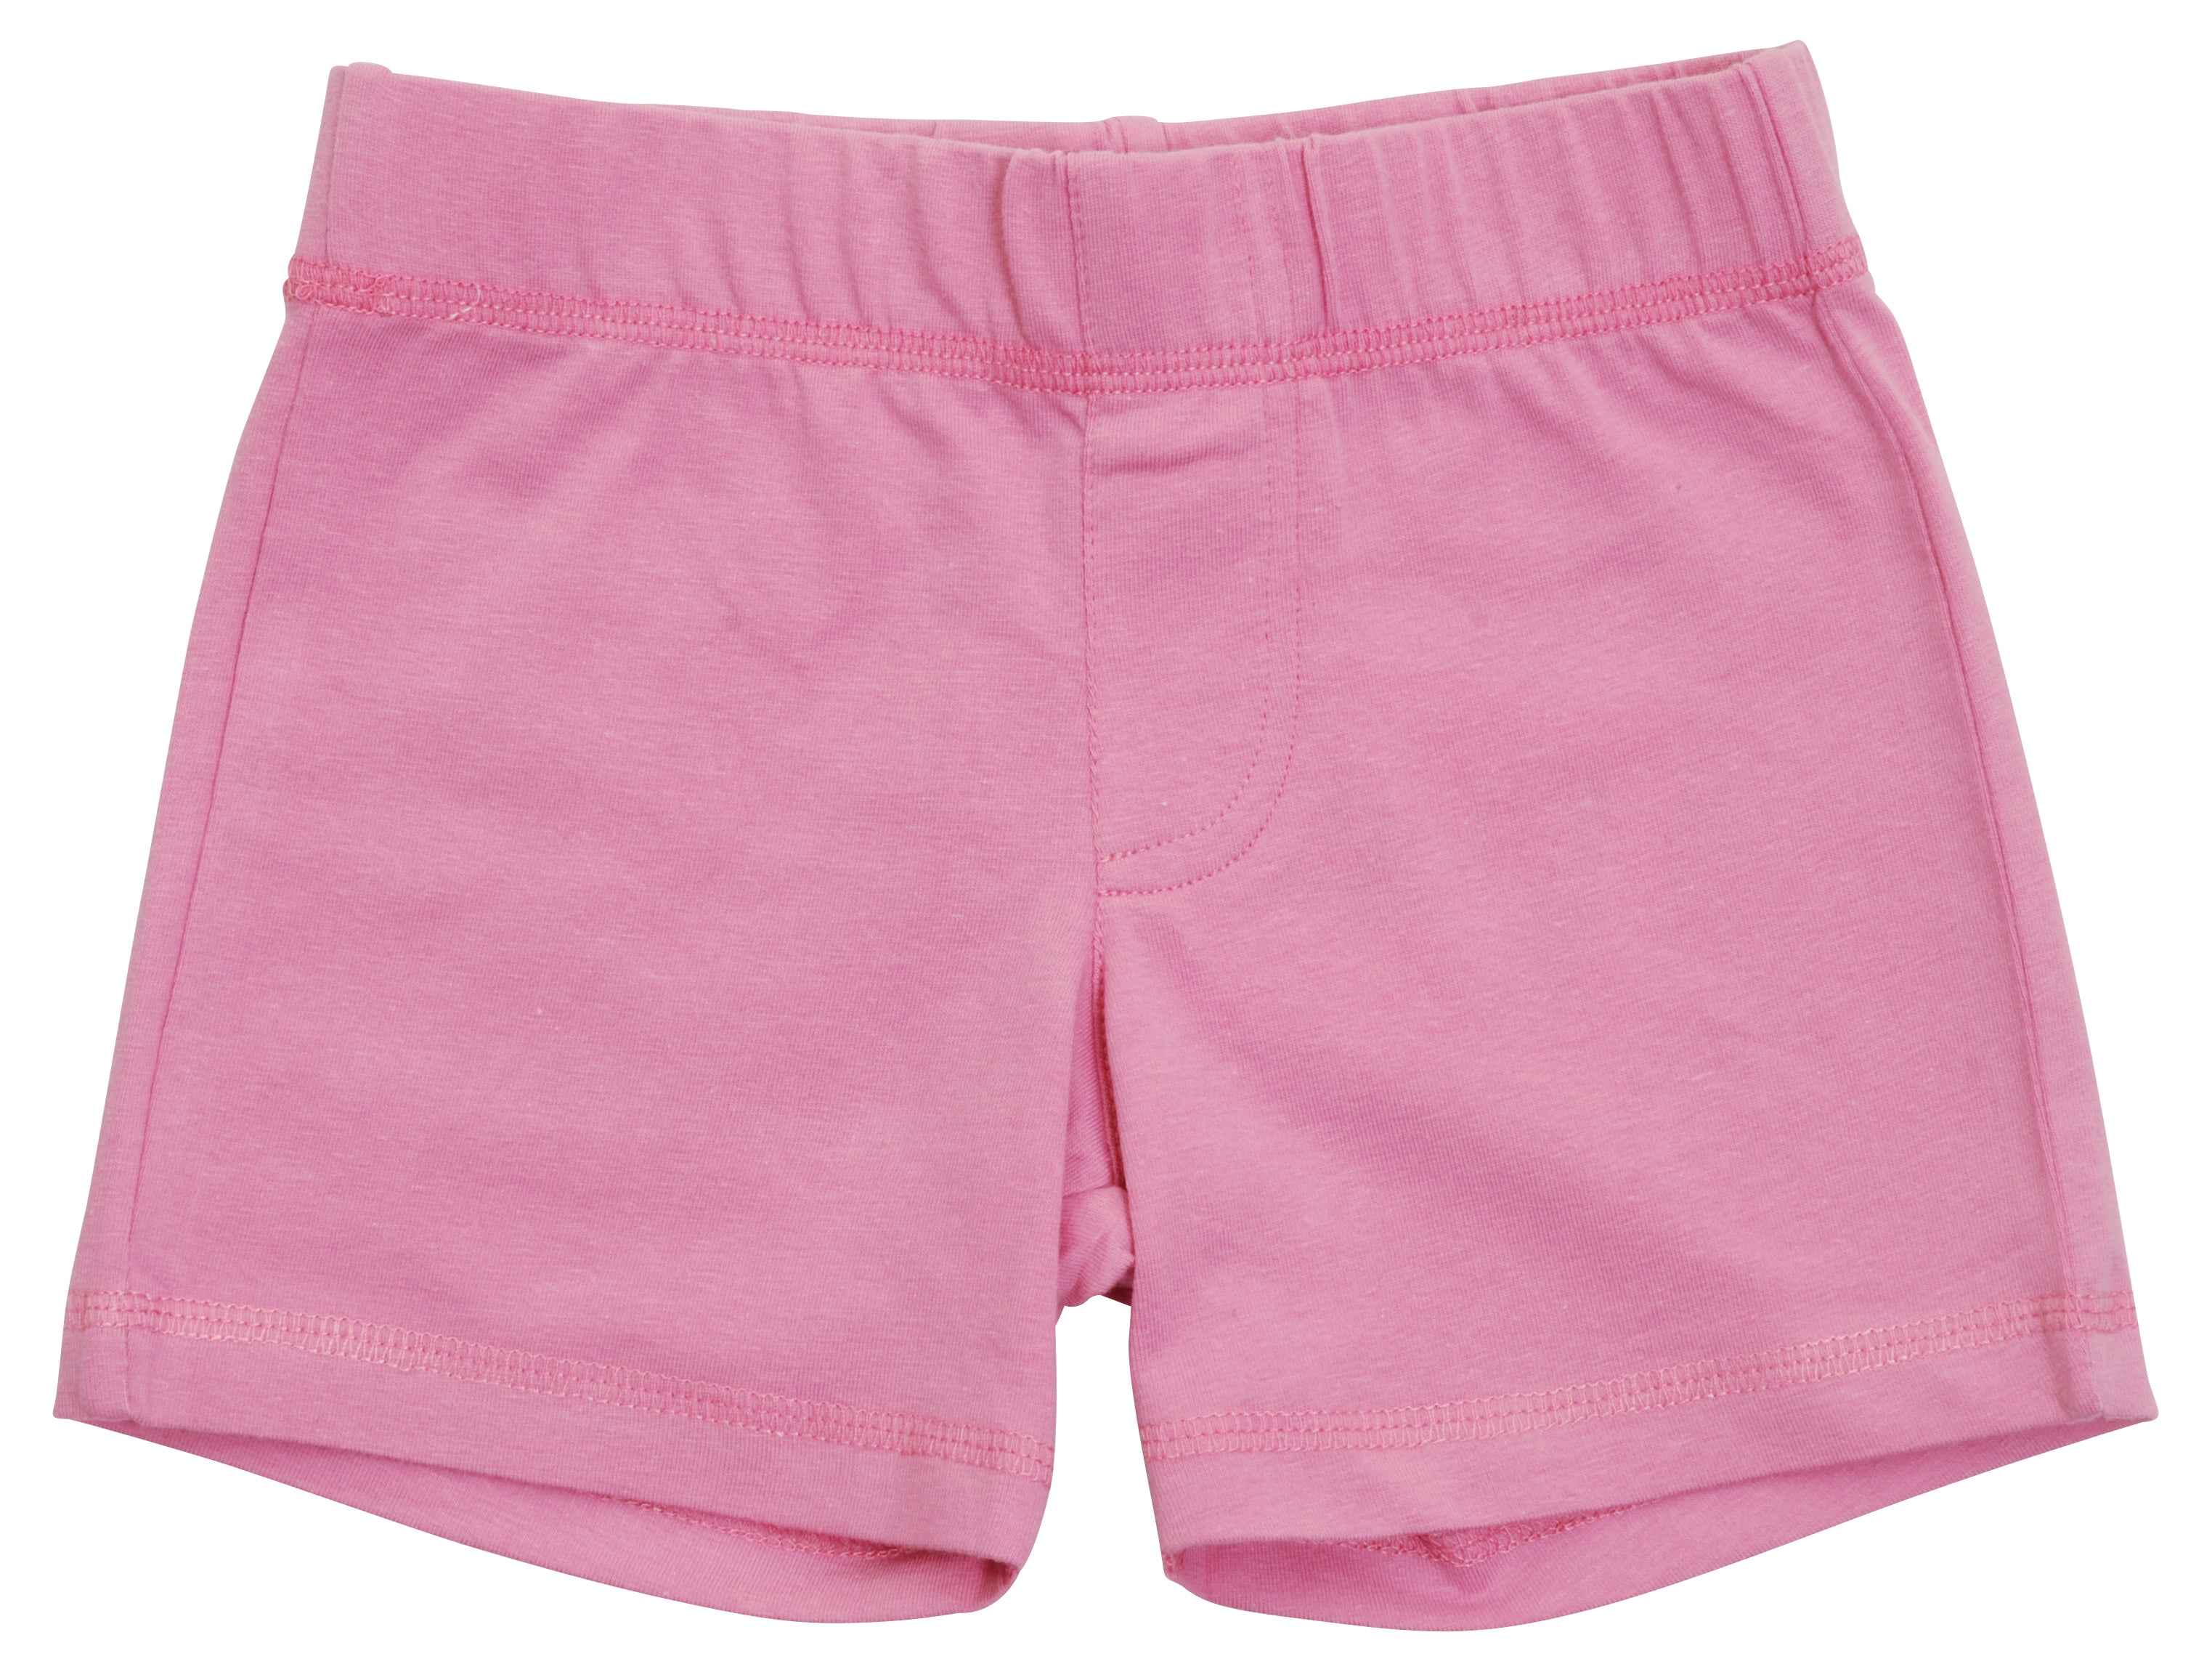 More Than A Fling - Shorts - Fuschia Pink